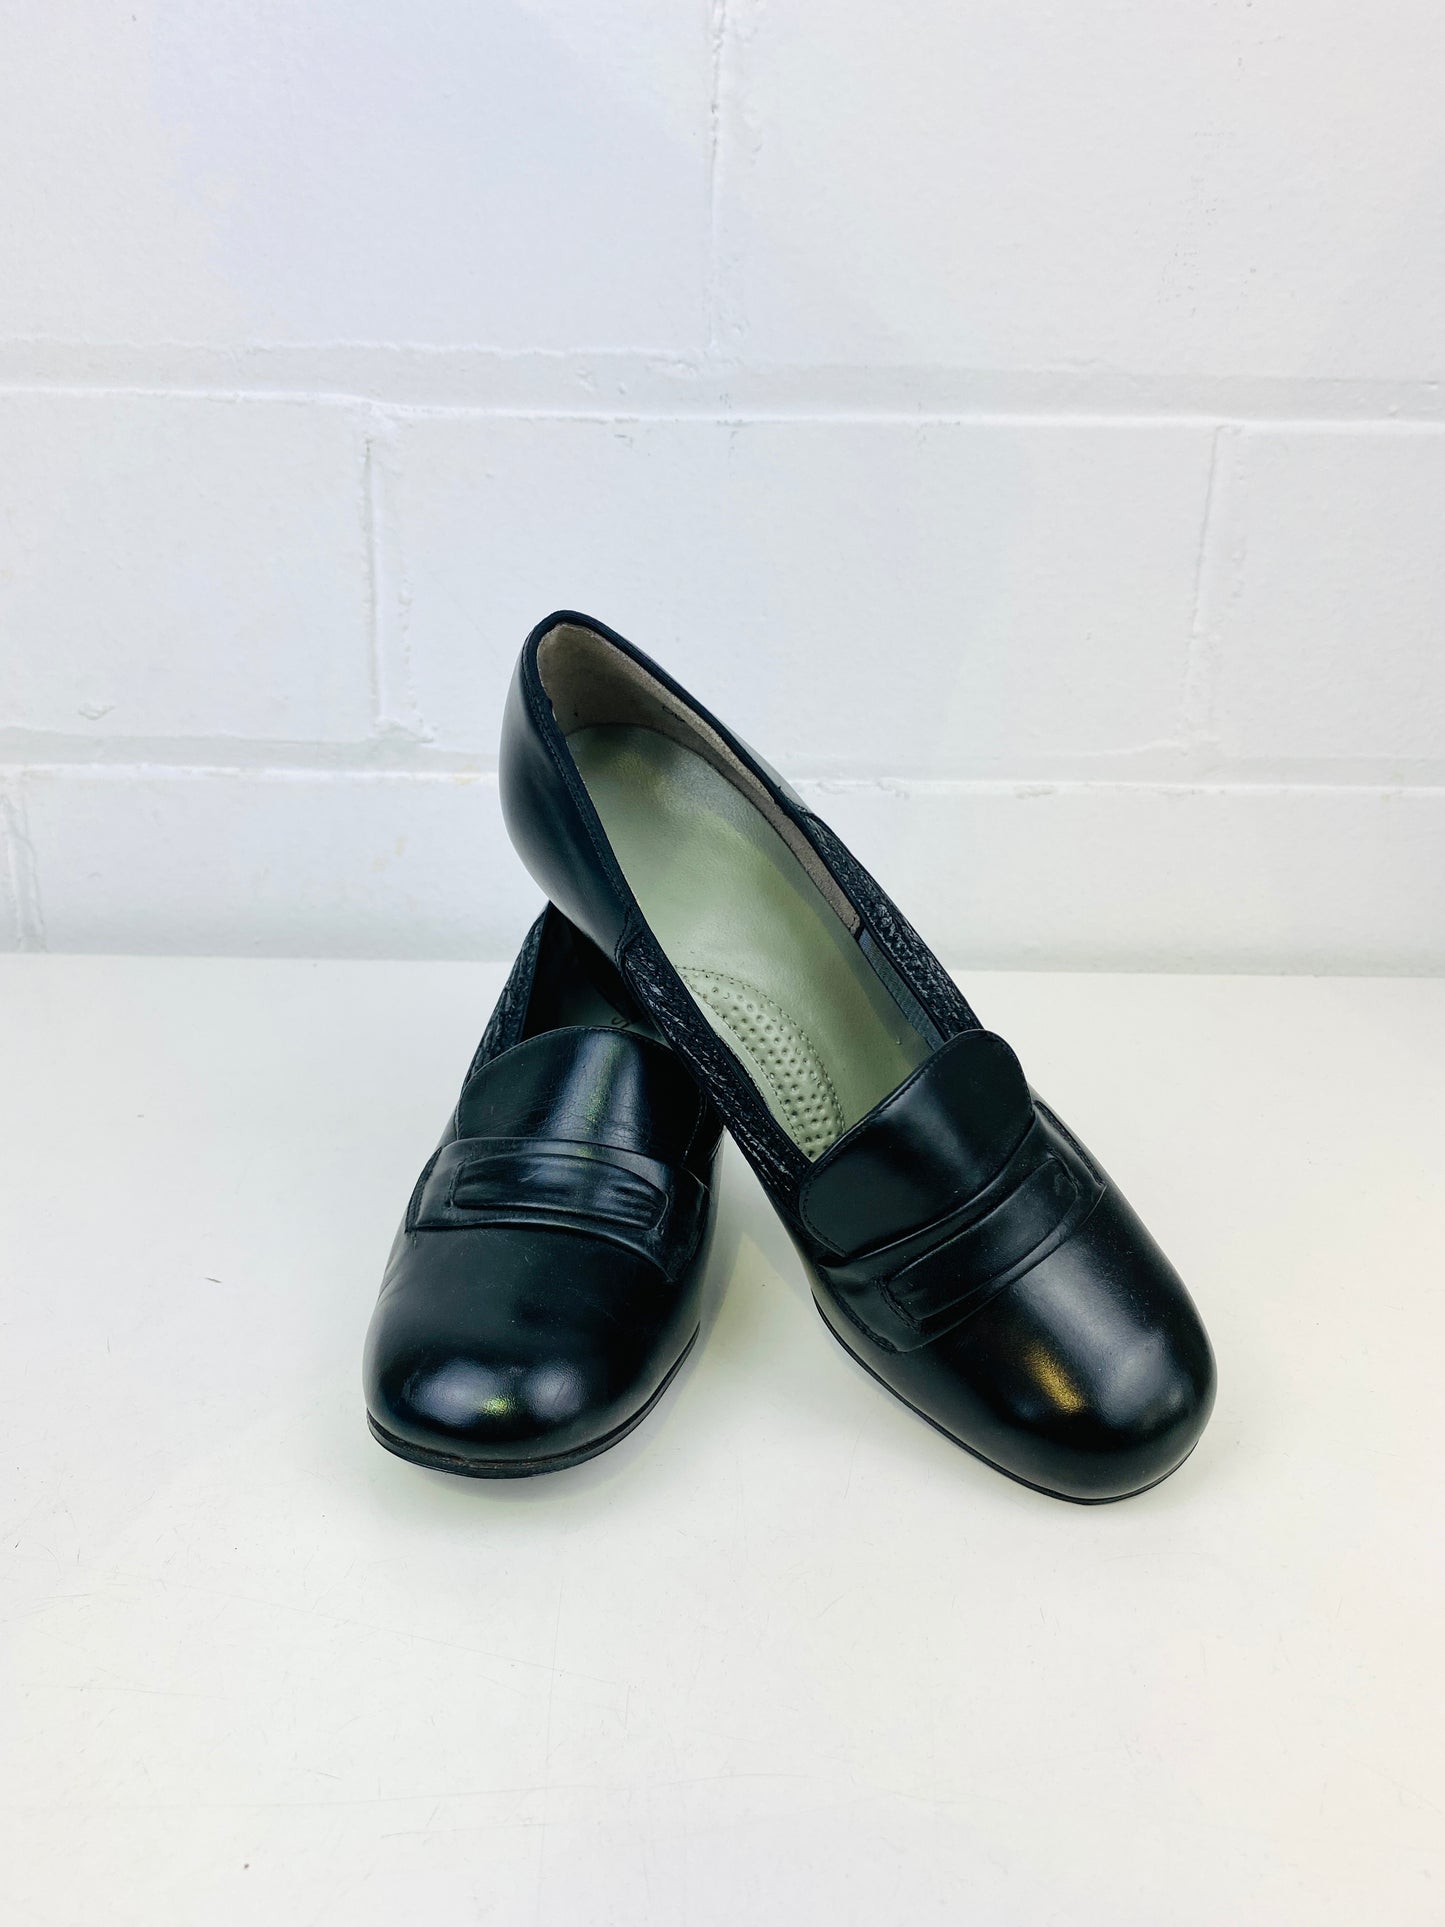 Vintage Deadstock Shoes, Women's 1980s Black Leather Cuban Heel Pumps, NOS, 5990